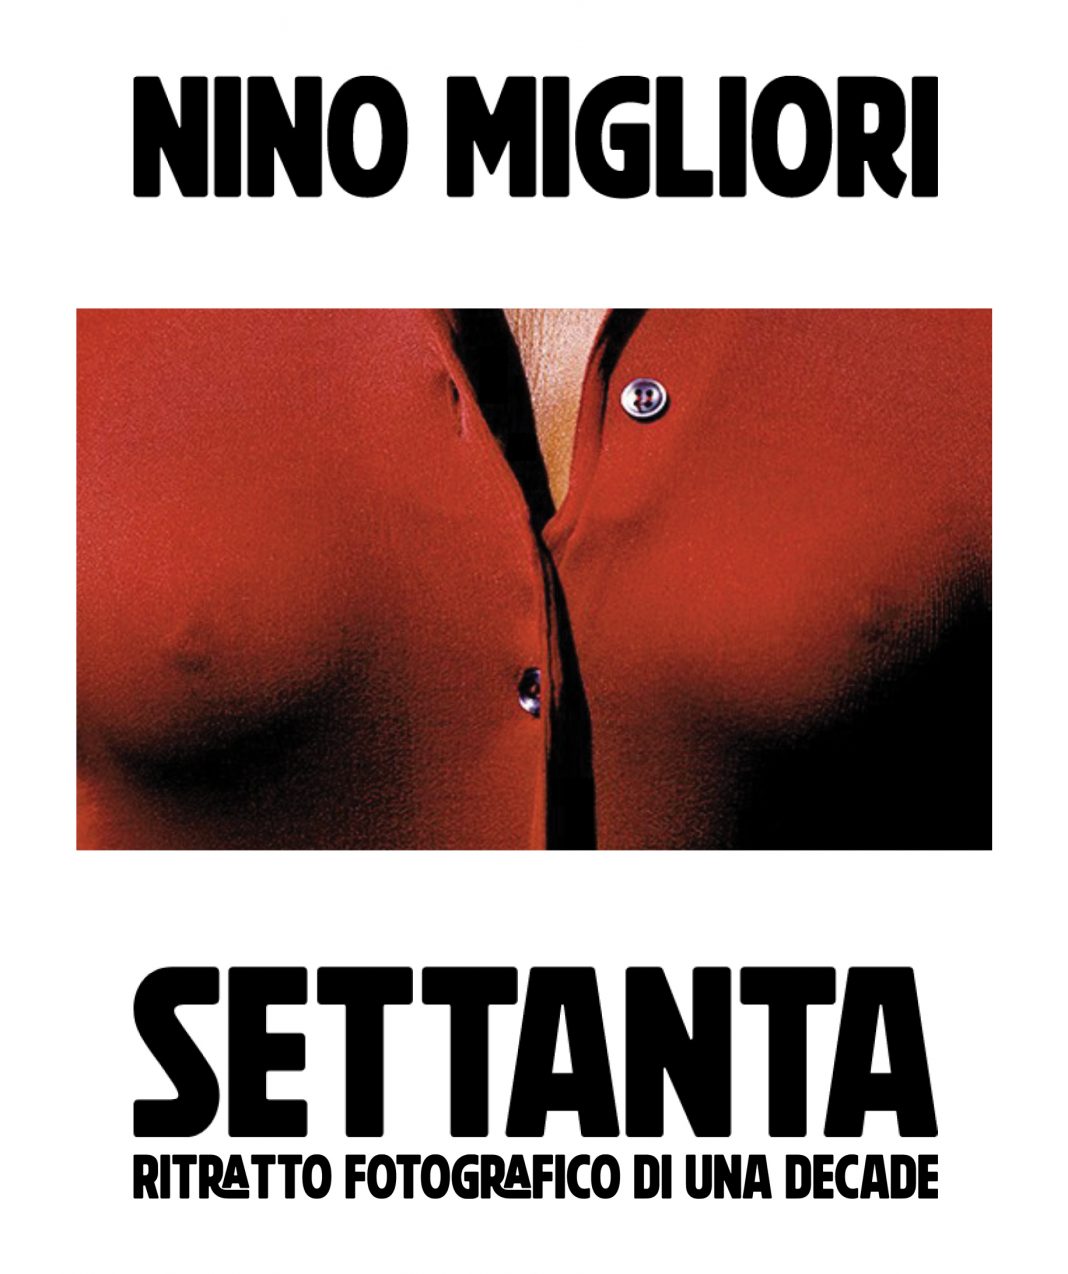 Nino Migliori – Settantahttps://www.exibart.com/repository/media/formidable/11/img/dcf/INVITO-Nino-Migliori.-SETTANTA_fronte-1068x1274.jpg